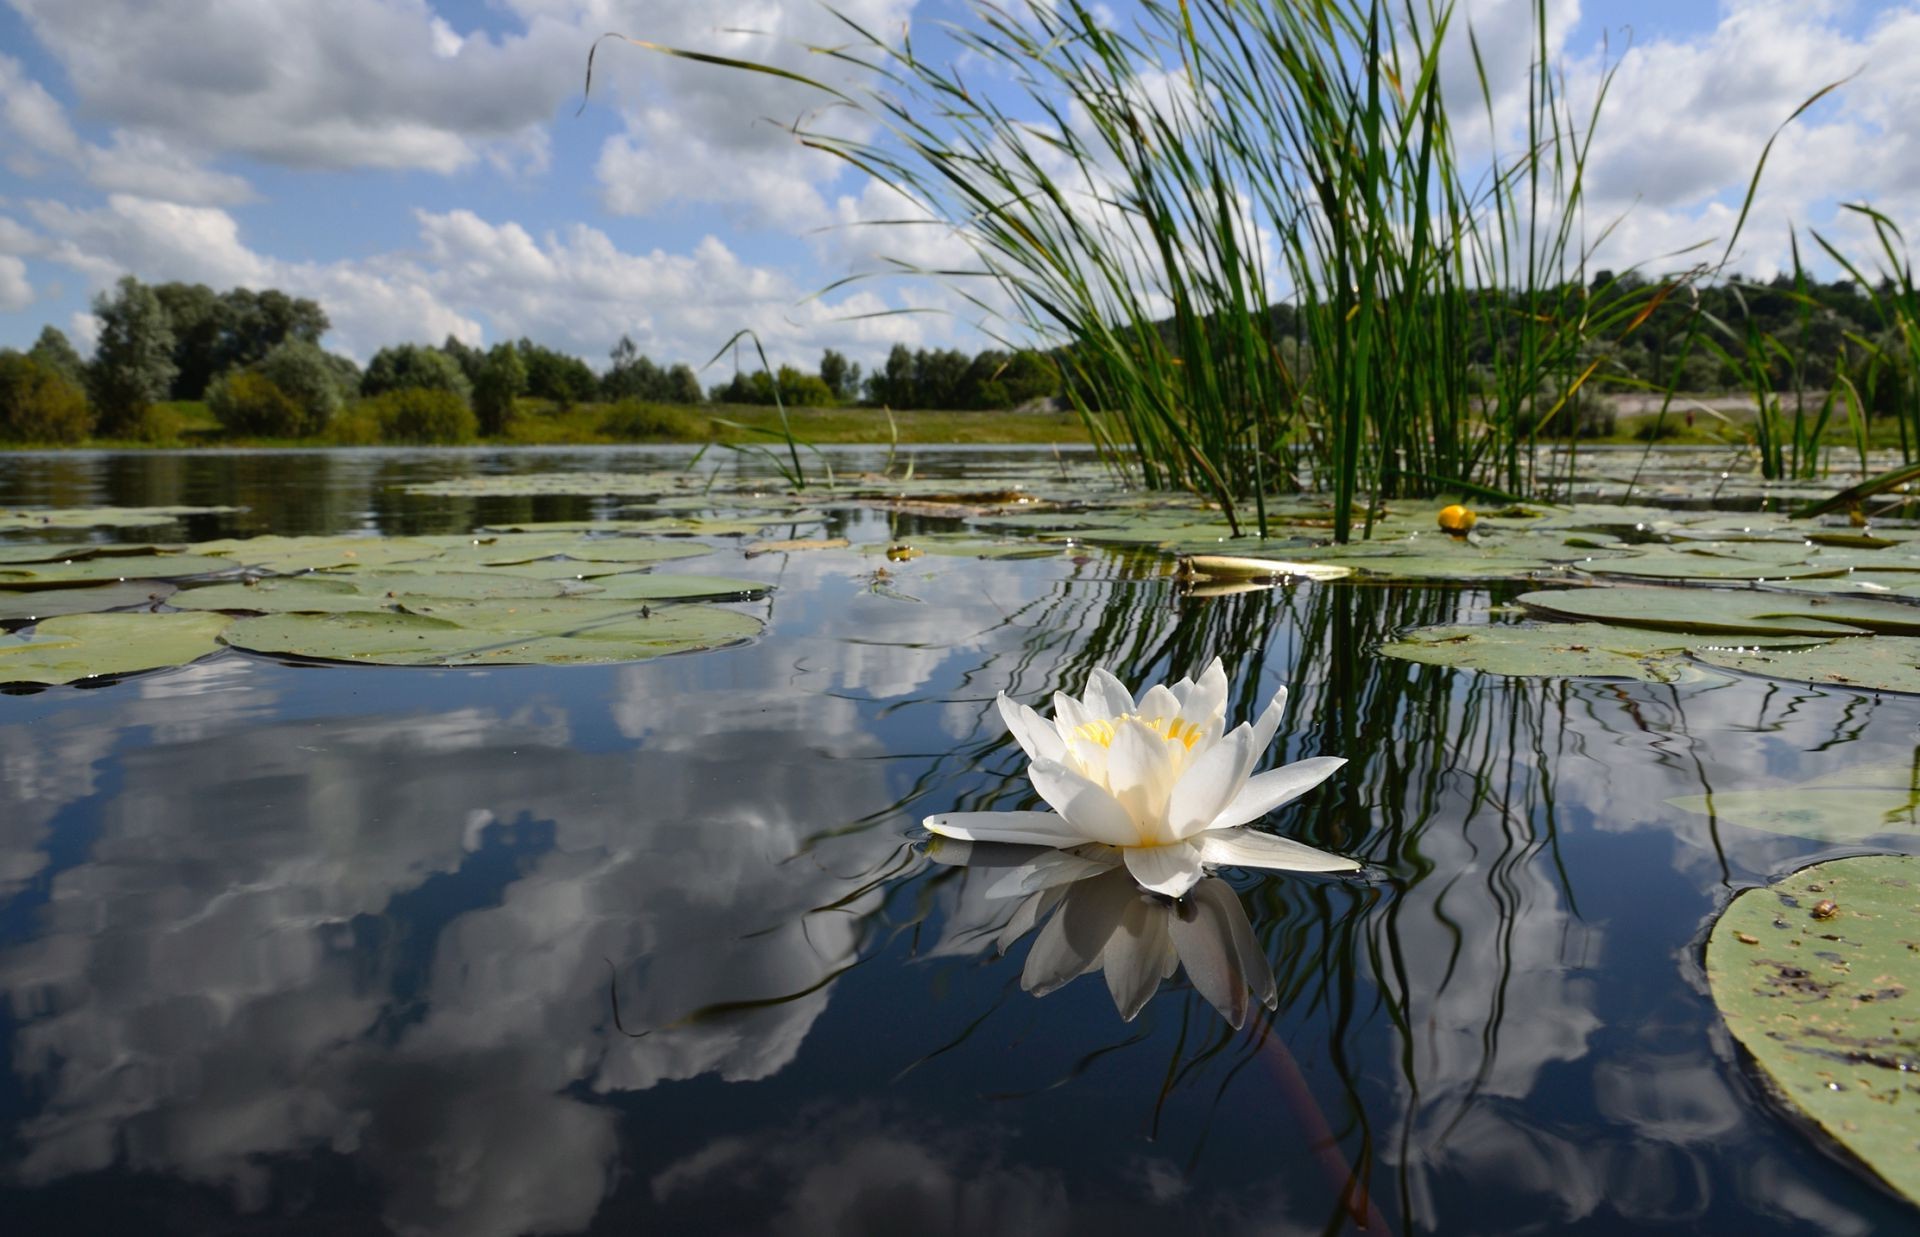 реки пруды и ручьи прудов и ручьев бассейн озеро воды отражение природа цветок лотос пейзаж лили лист лето на открытом воздухе флора среды мир красивые парк